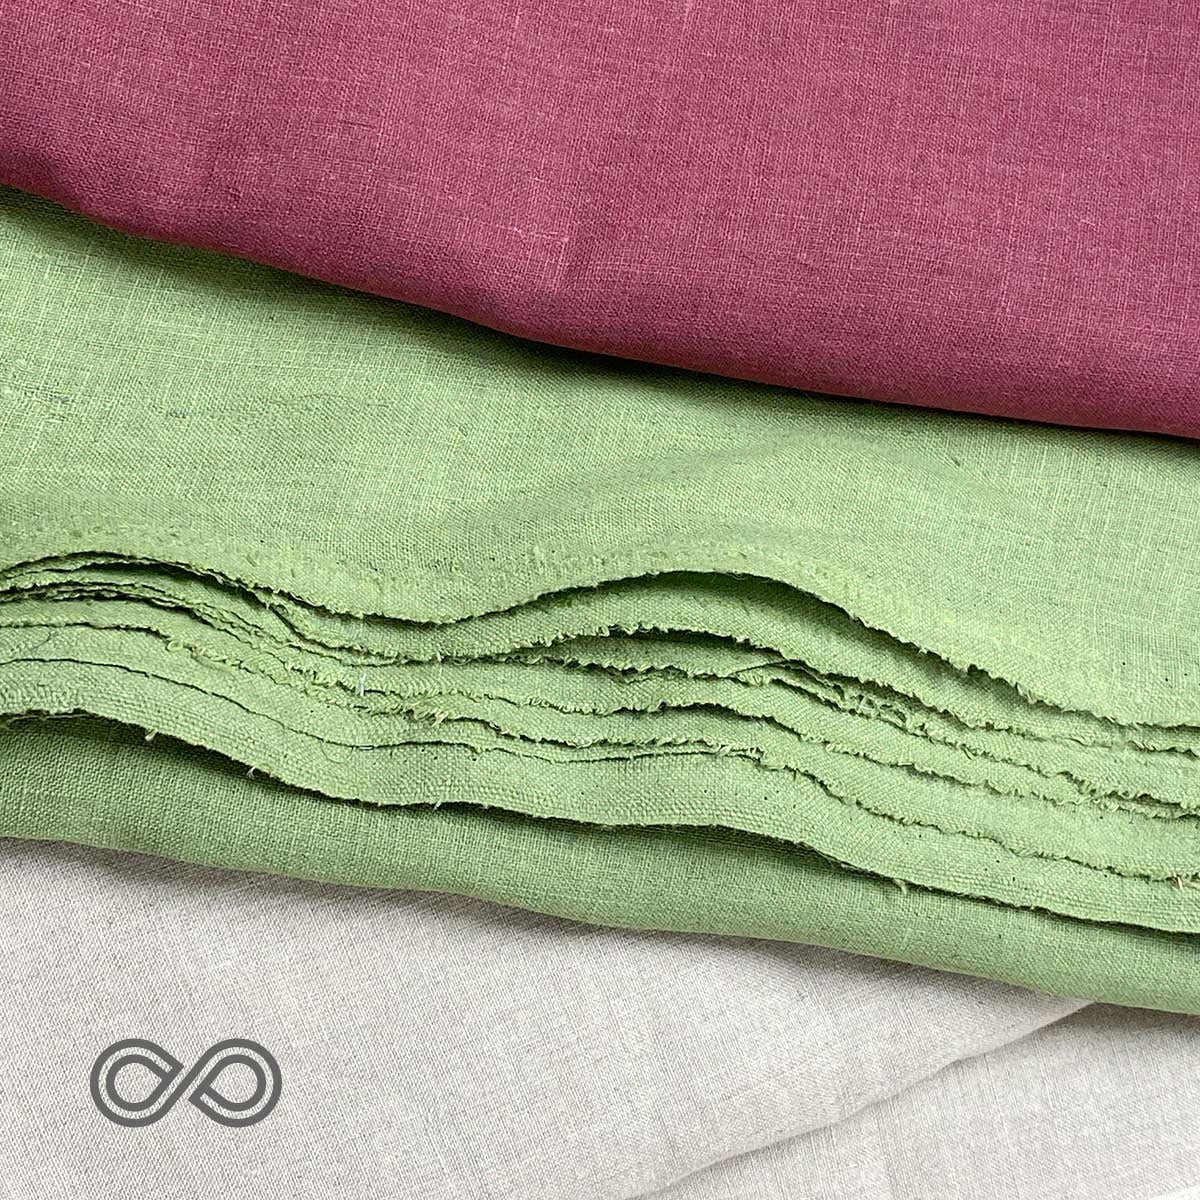 Organic Cotton Yarn-dyed Indigo Denim Fabric By the Yard – Rawganique